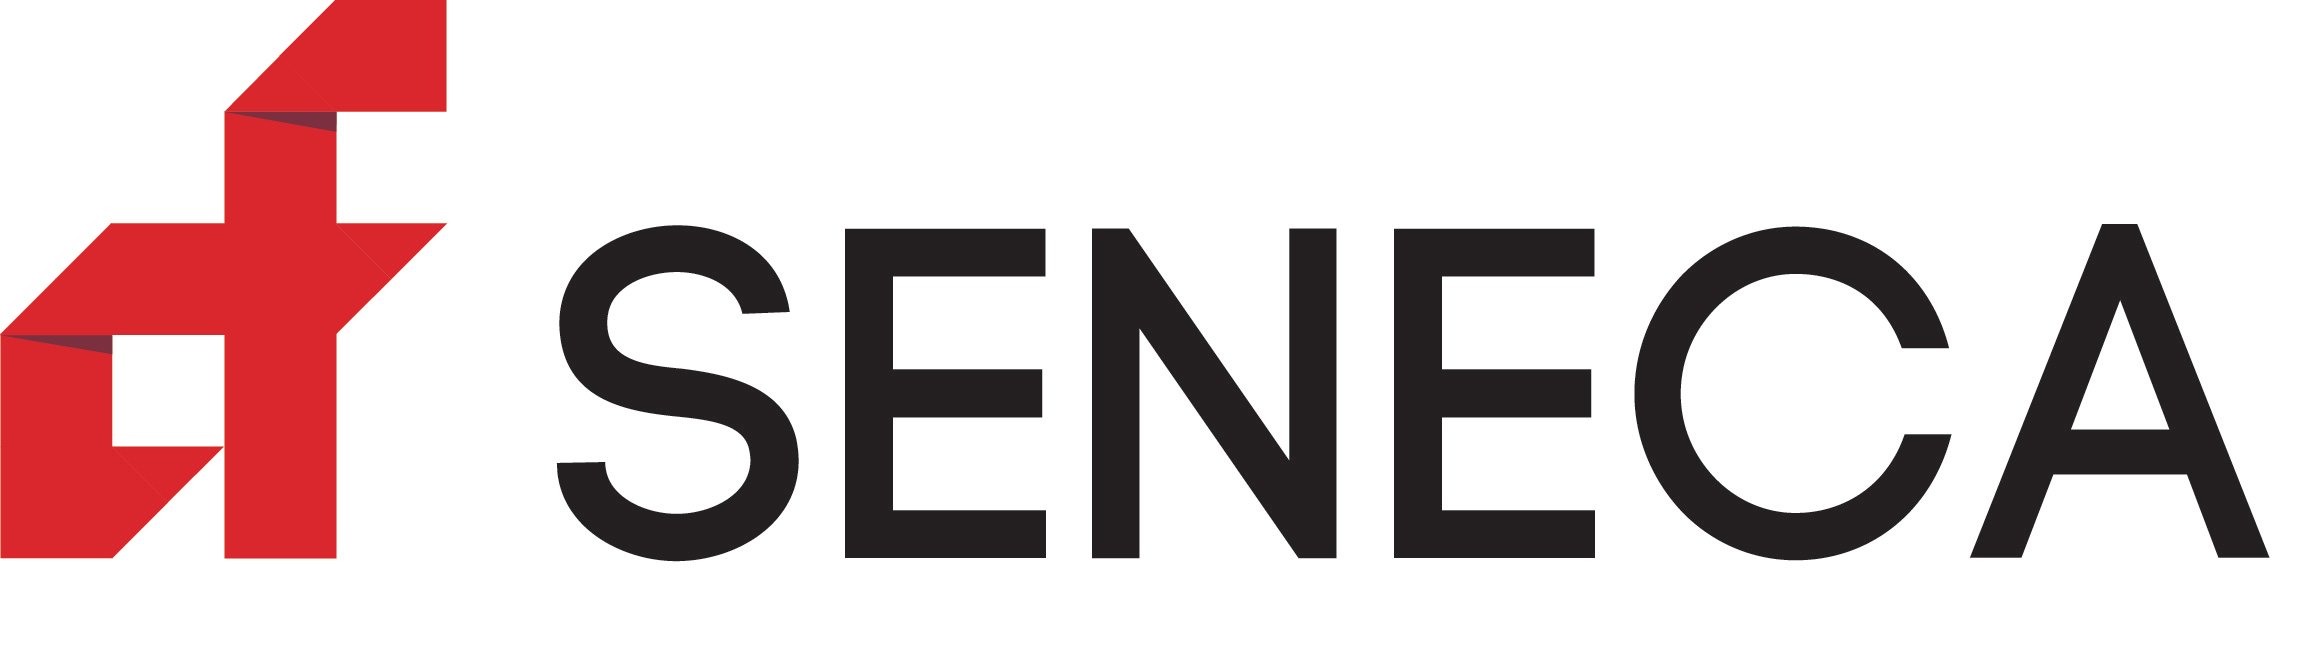 Seneca_logo_4c